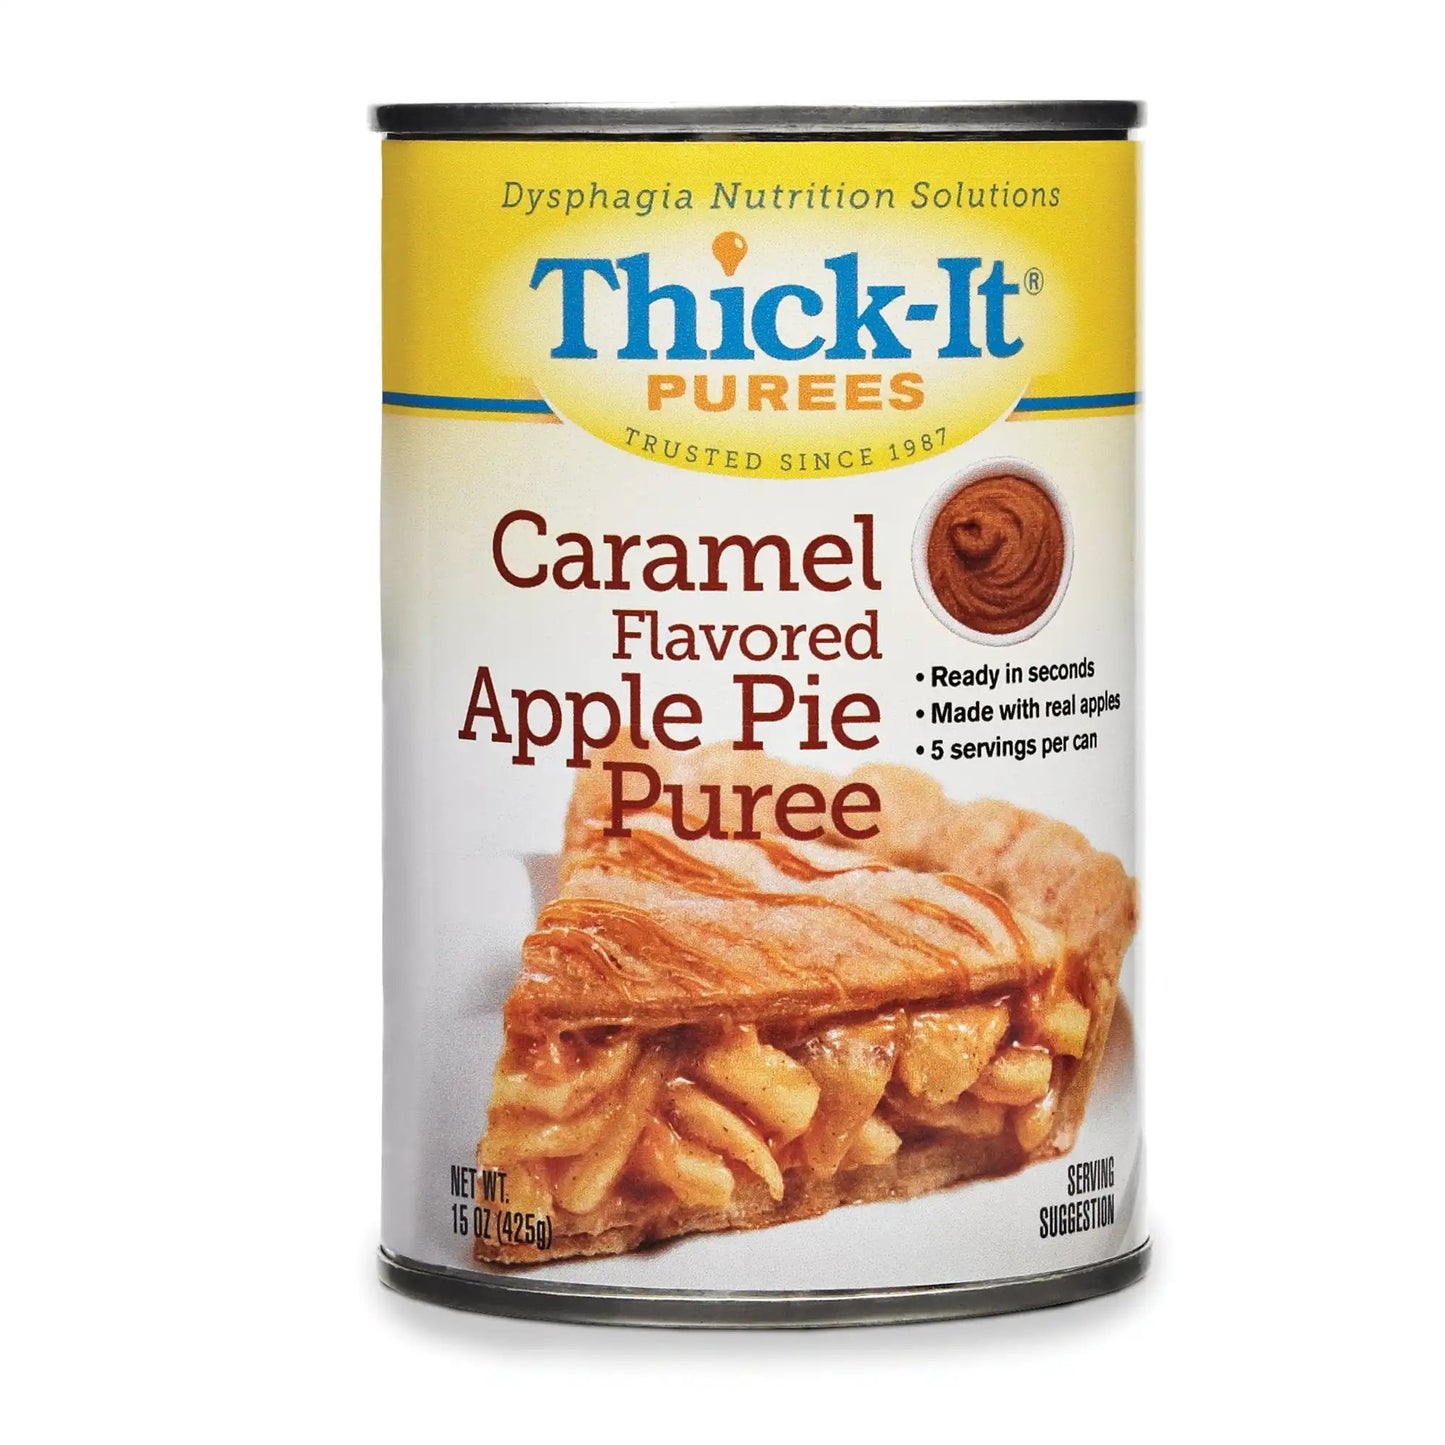 Thick-It Caramel Apple Pie Purée, 15 oz.